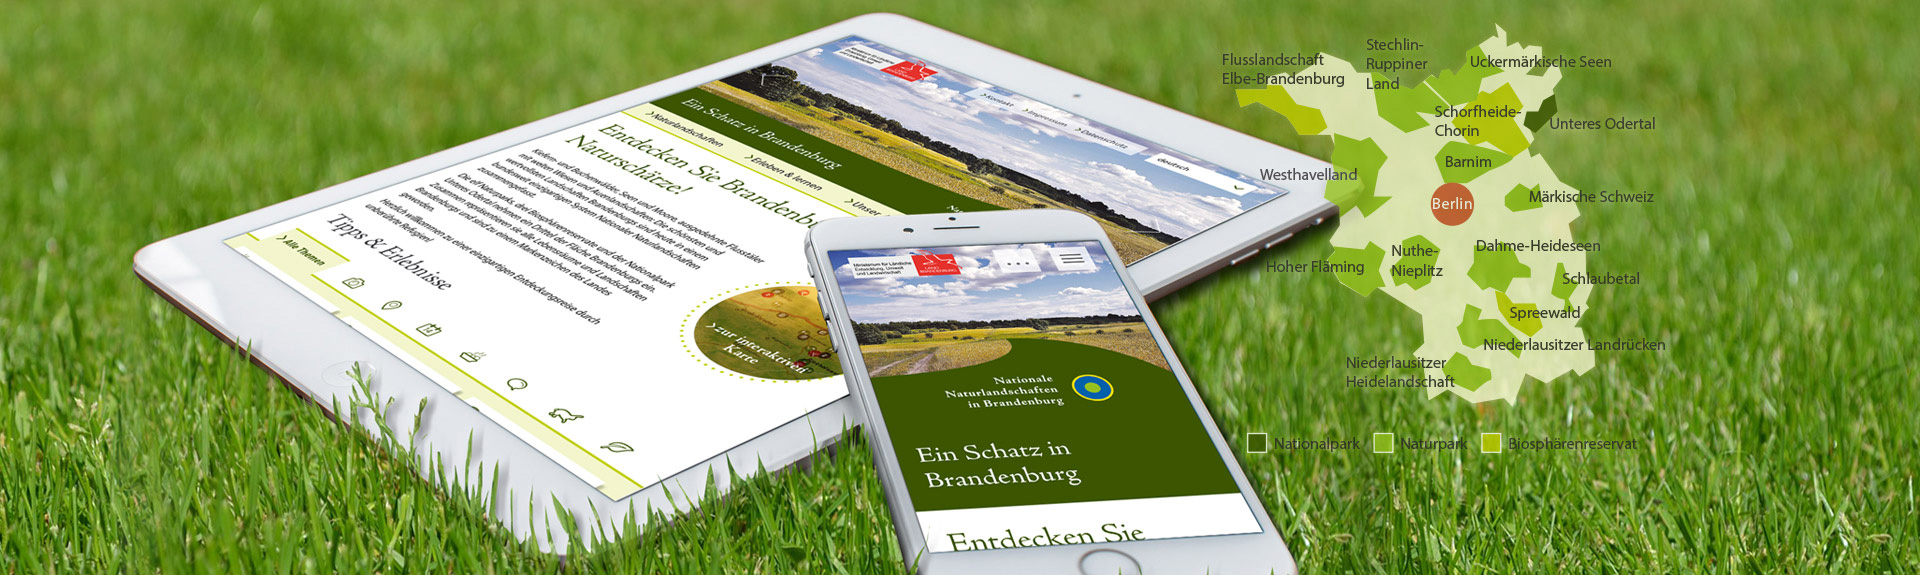 Brandenburgs Naturportale im Responsive Webdesign! made by Sandstein Neue Medien.